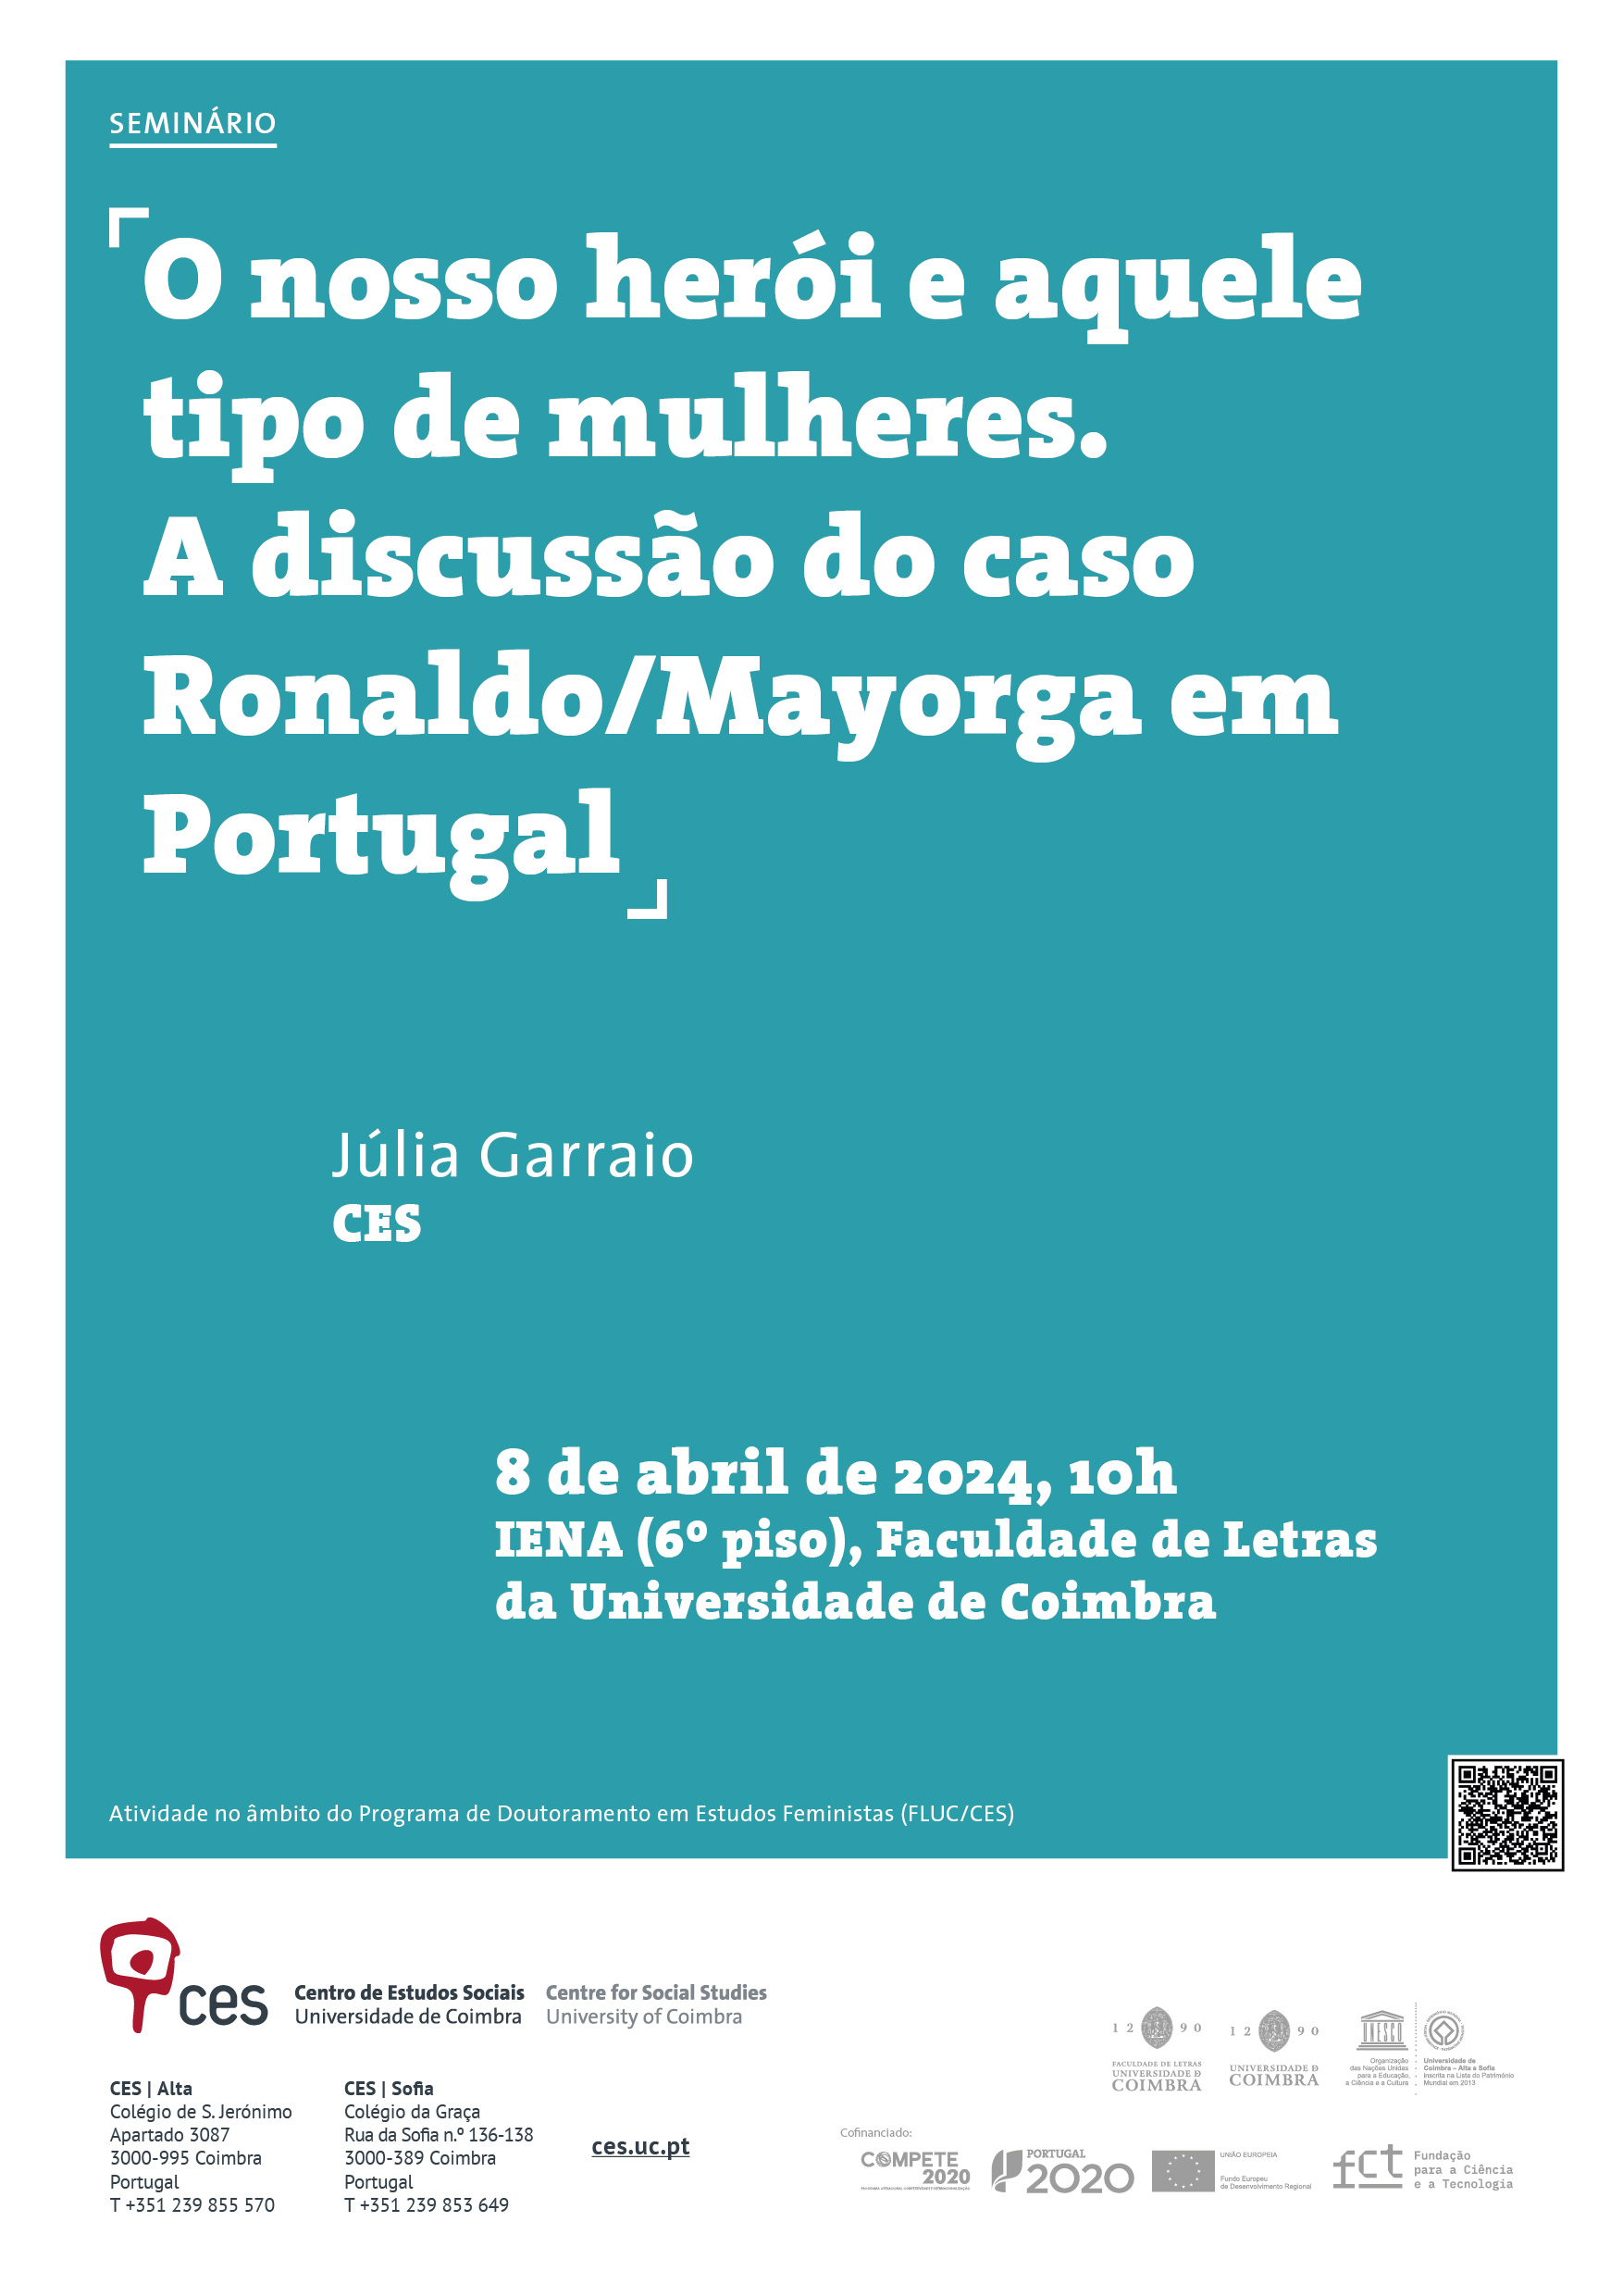 O nosso herói e aquele tipo de mulheres.  A discussão do caso Ronaldo/Mayorga em Portugal<span id="edit_45350"><script>$(function() { $('#edit_45350').load( "/myces/user/editobj.php?tipo=evento&id=45350" ); });</script></span>